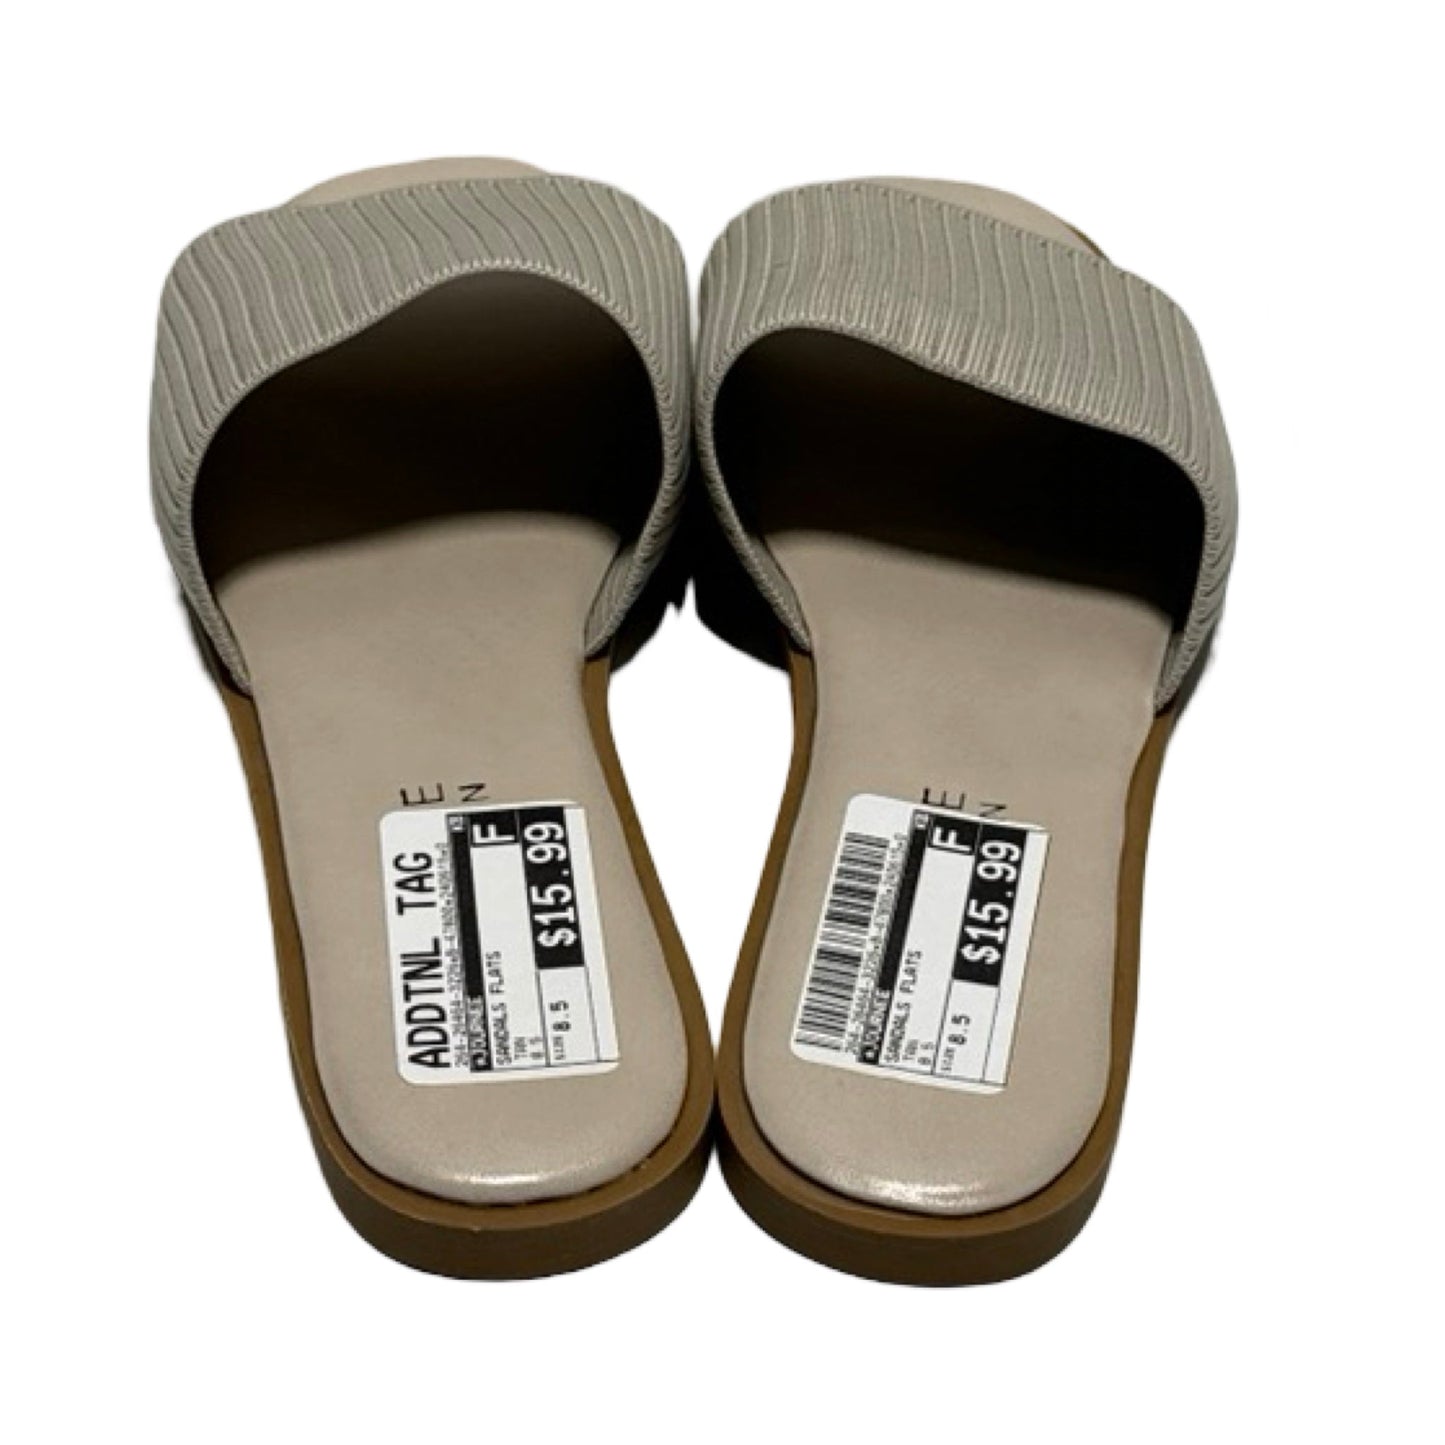 Tan Sandals Flats Journee, Size 8.5